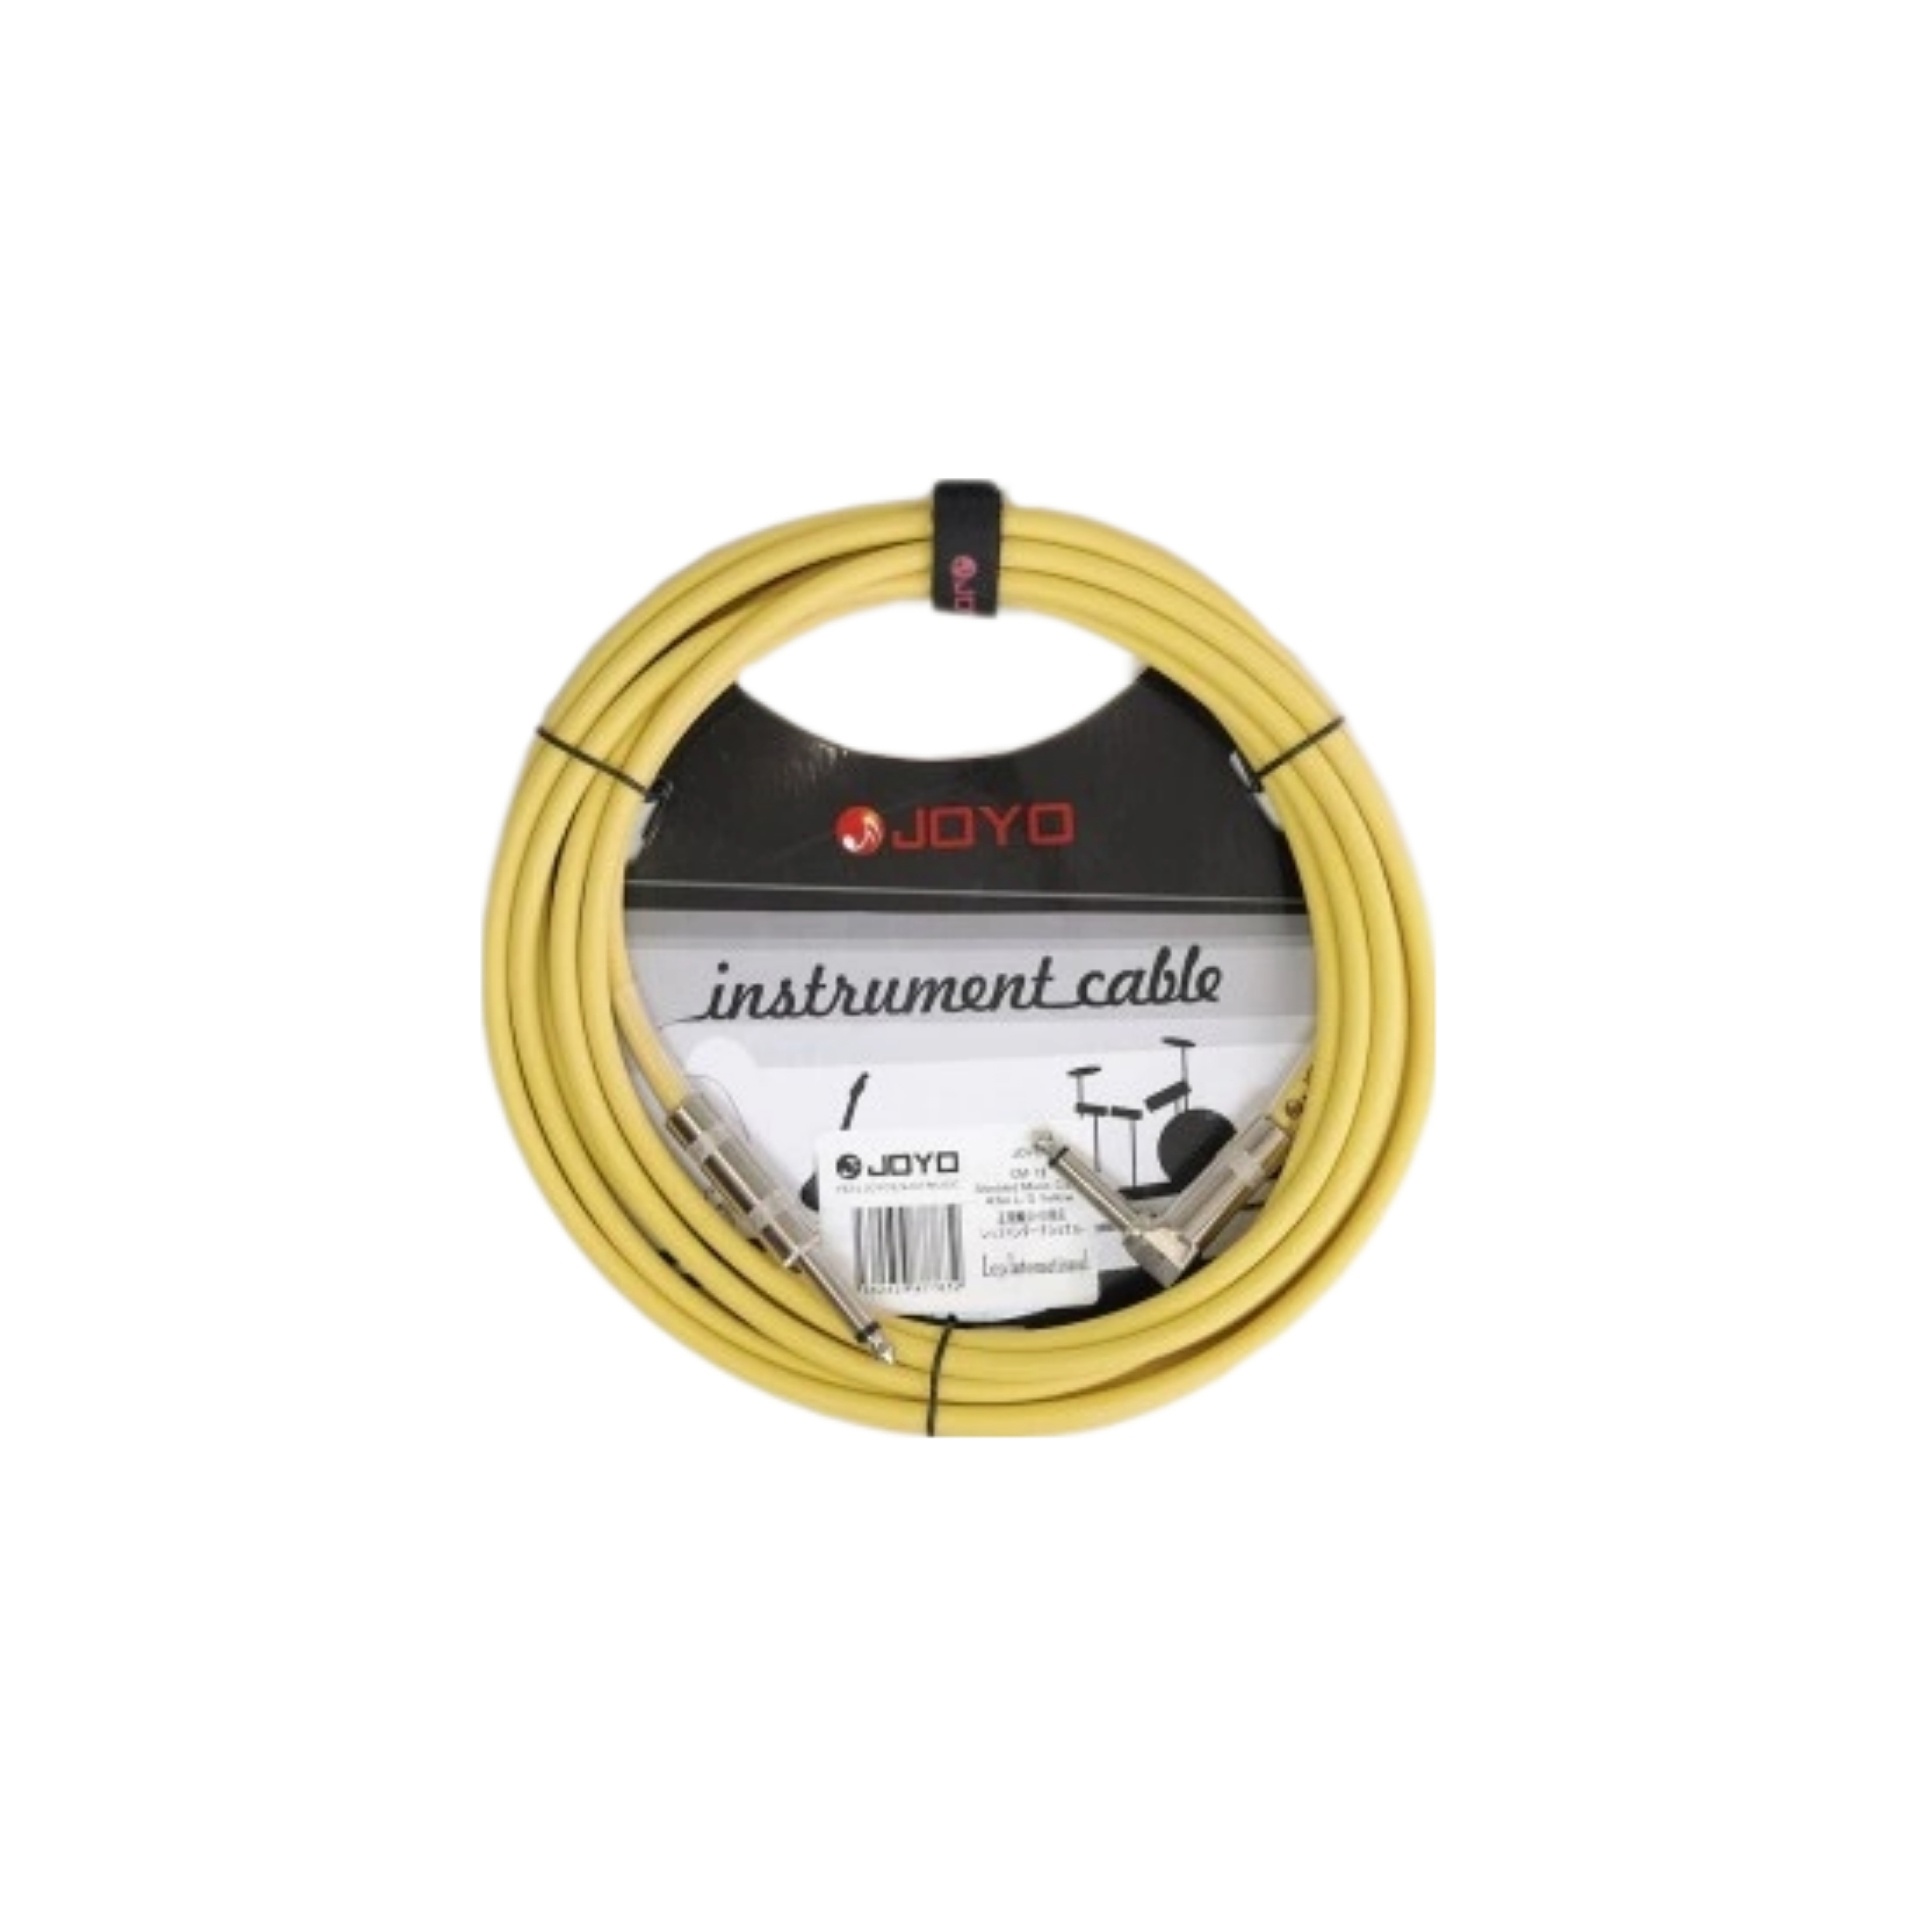 фото Joyo cm-04 cable yellow инструментальный кабель, 4,5 м, ts-ts 6,3 мм